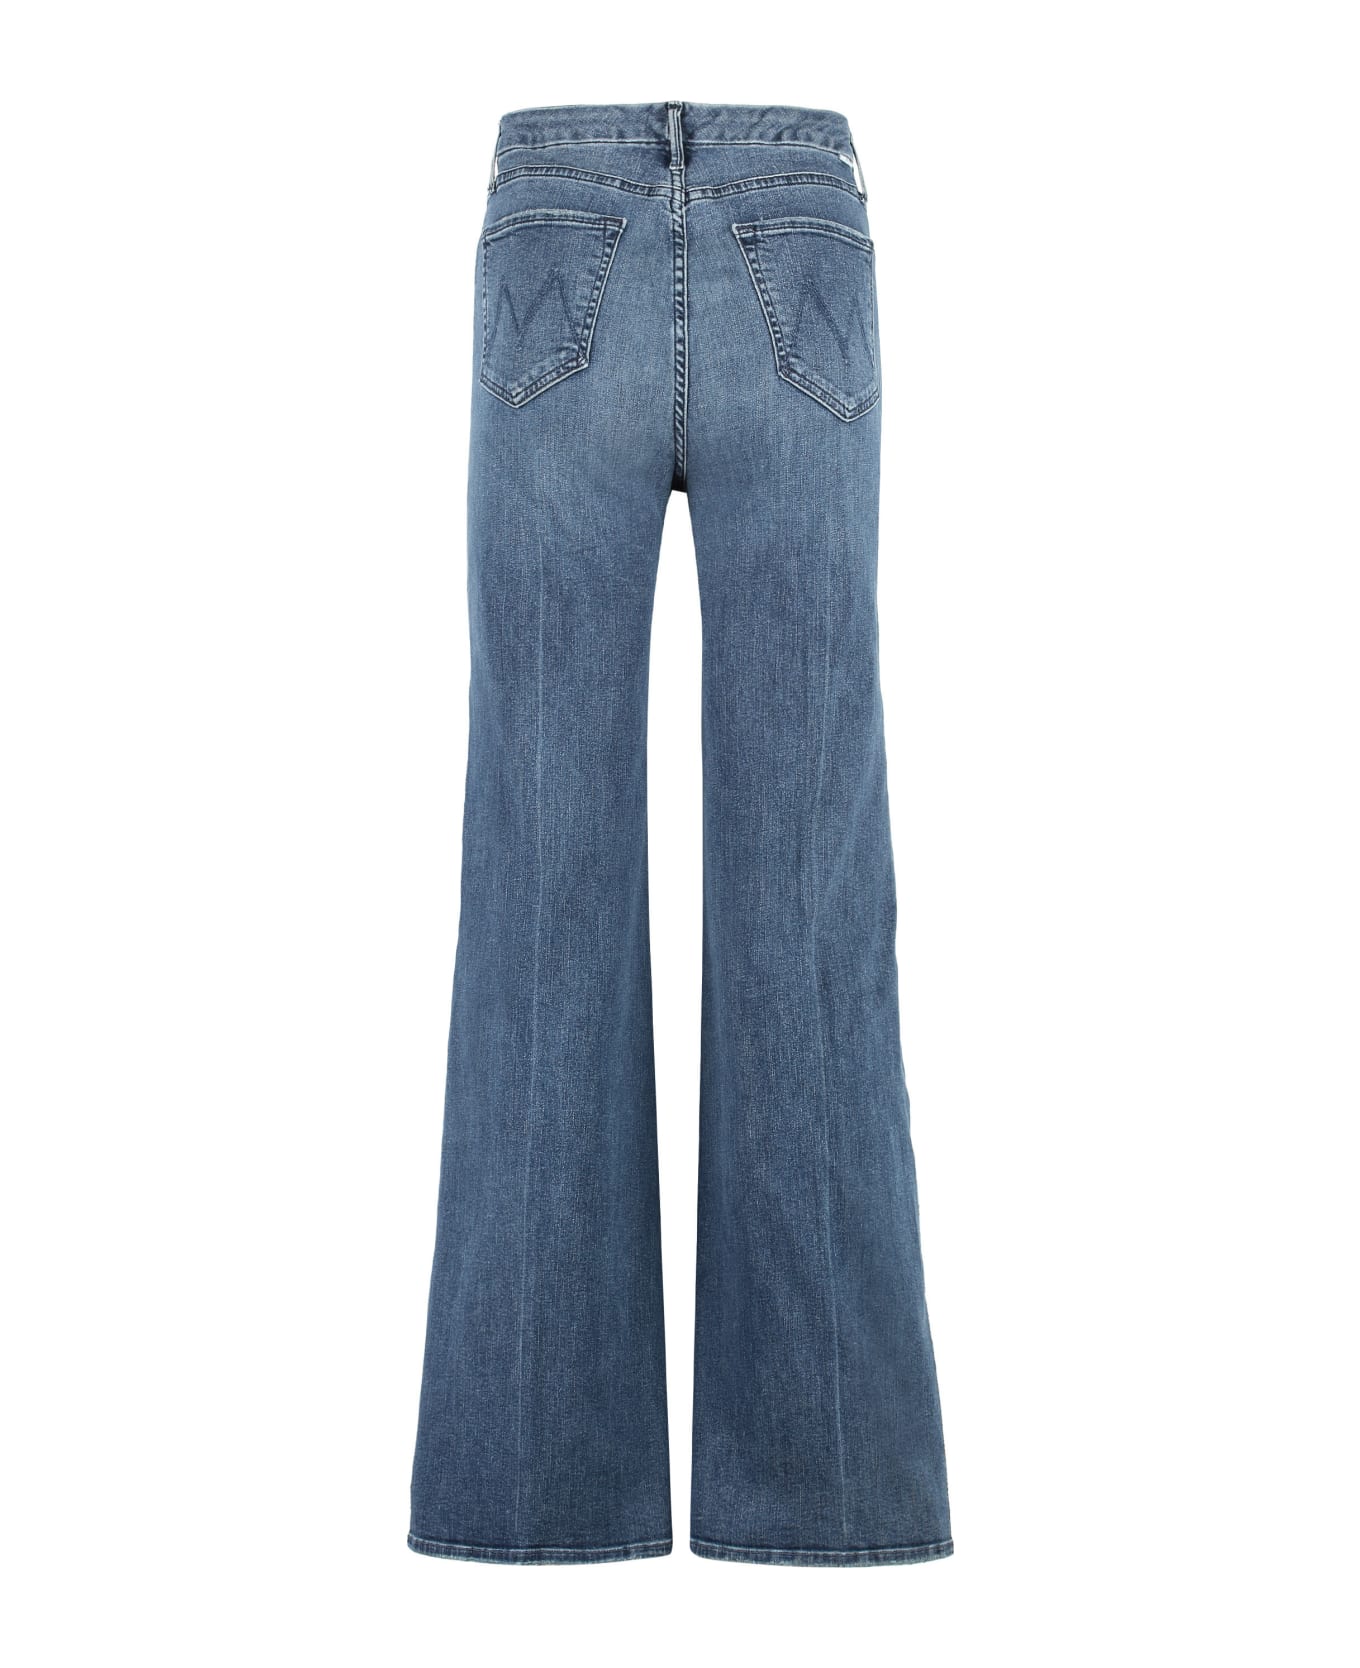 Mother Roller Skimp Wide-leg Jeans - Denim